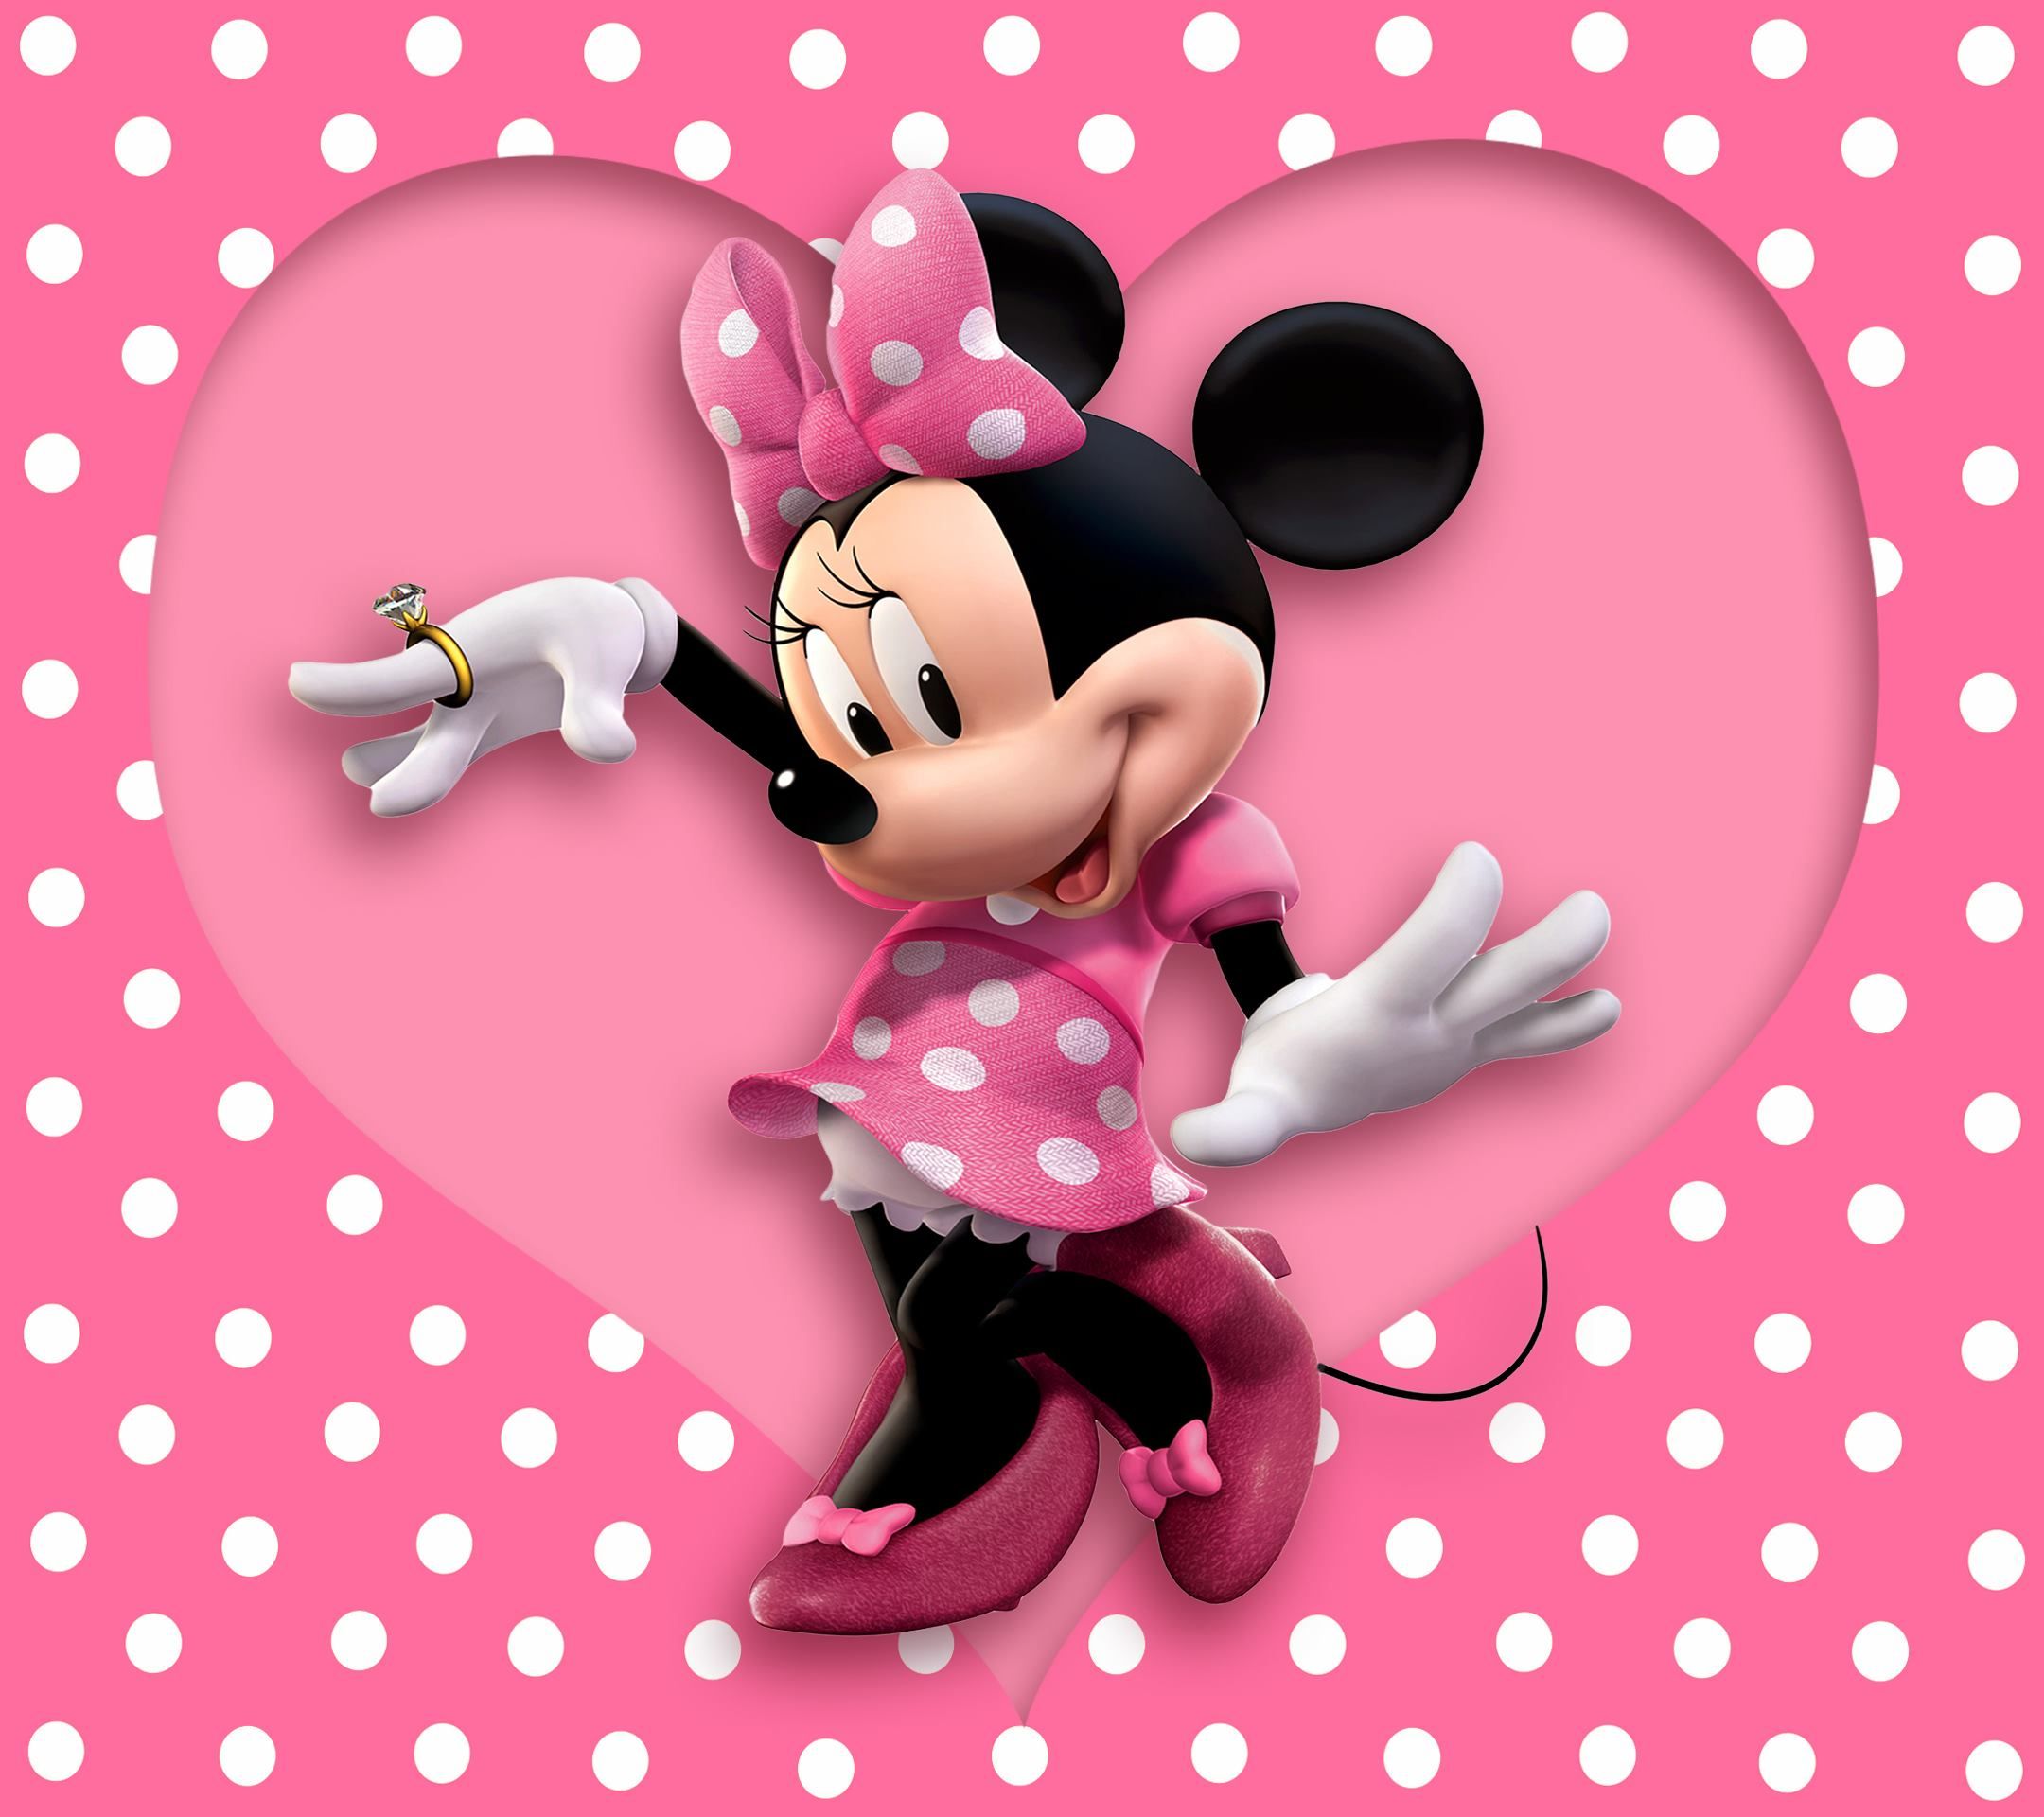  Minnie Mouse Hintergrundbild 2160x1920. Minnie Mouse HD Wallpaper Free Download